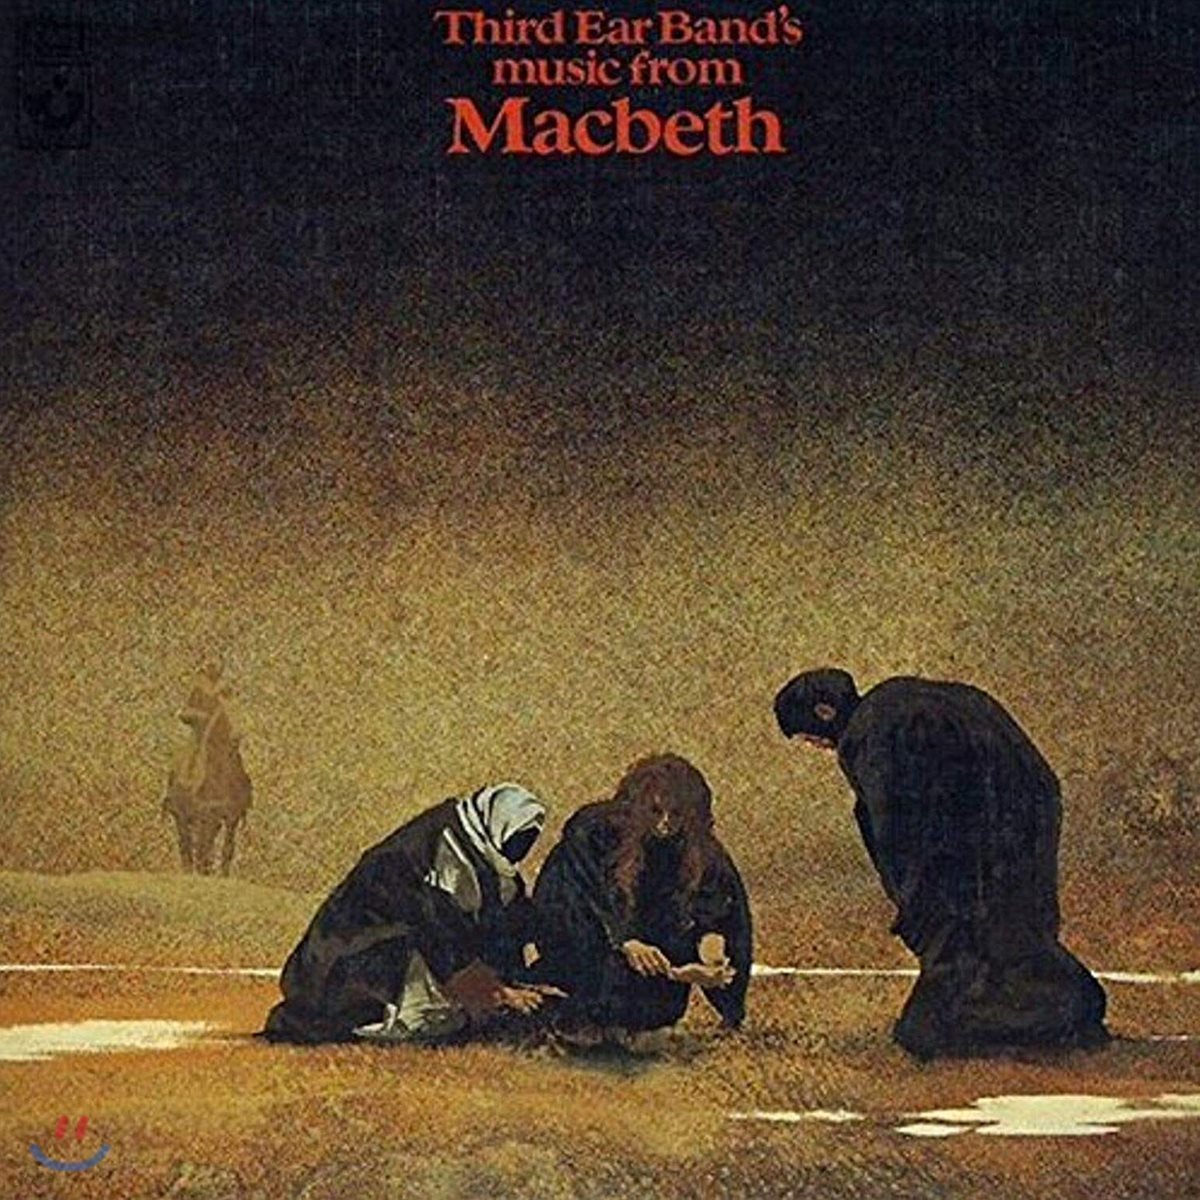 맥베스의 비극 영화음악 (The Tragedy of Macbeth OST by Third Ear Band)